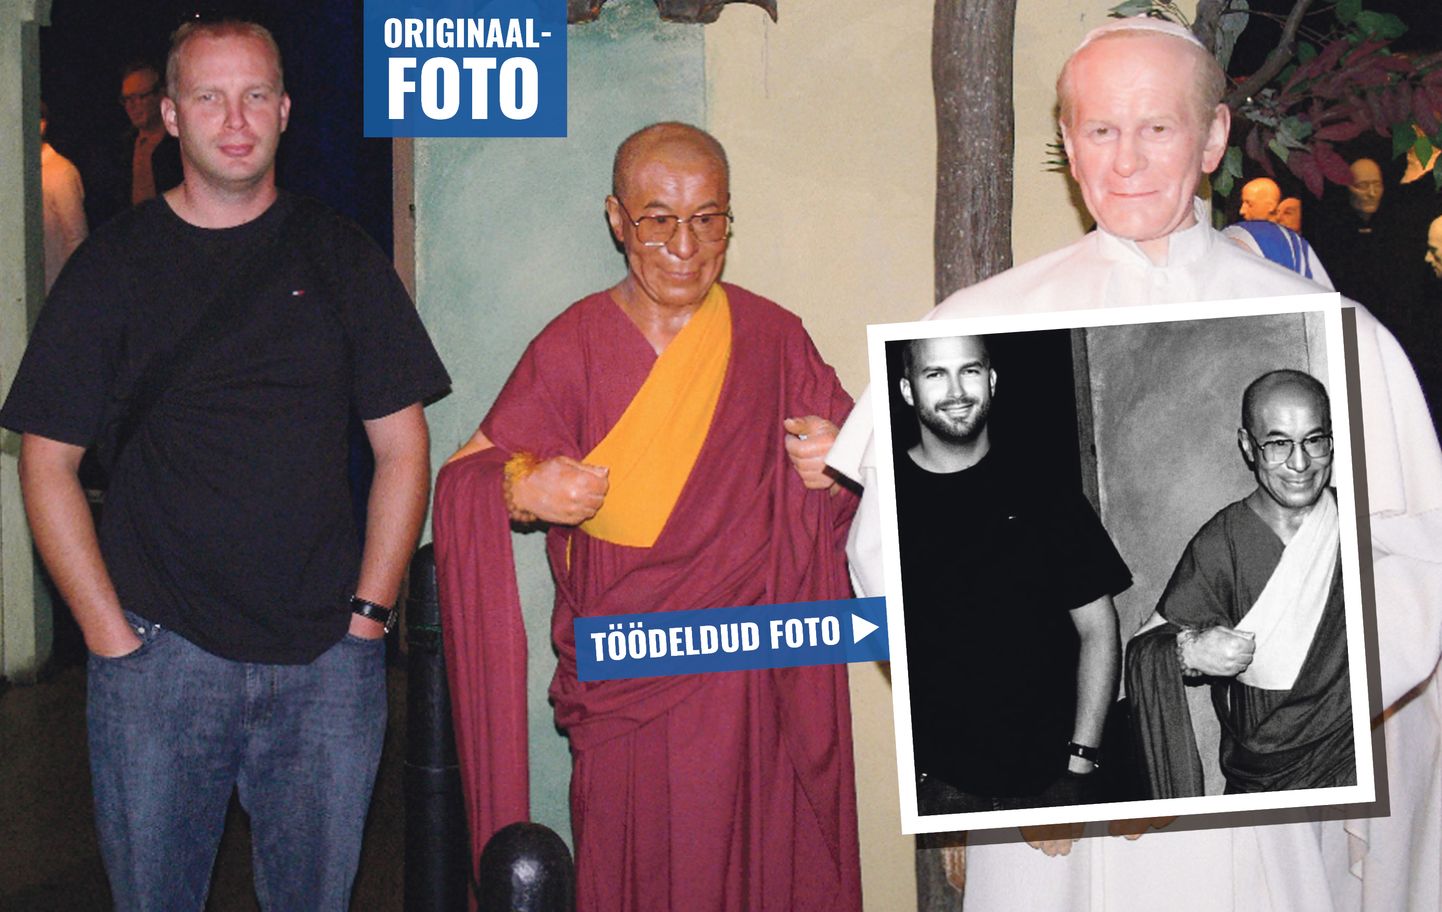 На прошлой неделе Марек Тамм сказал, что фотографии, на которых он позирует с арабским принцем и Далай-ламой, были сделаны с восковыми фигурами и это можно доказать. Вчера он отправил в редакцию оригиналы изображений, опубликованных в двух предыдущих статьях. По словам Тамма, на фотографии Далай-ламы изображена восковая фигура, и с арабским принцем он встретился случайно. По его словам, он наложил фильтр на фото Далай-ламы, лицо якобы не обработано.